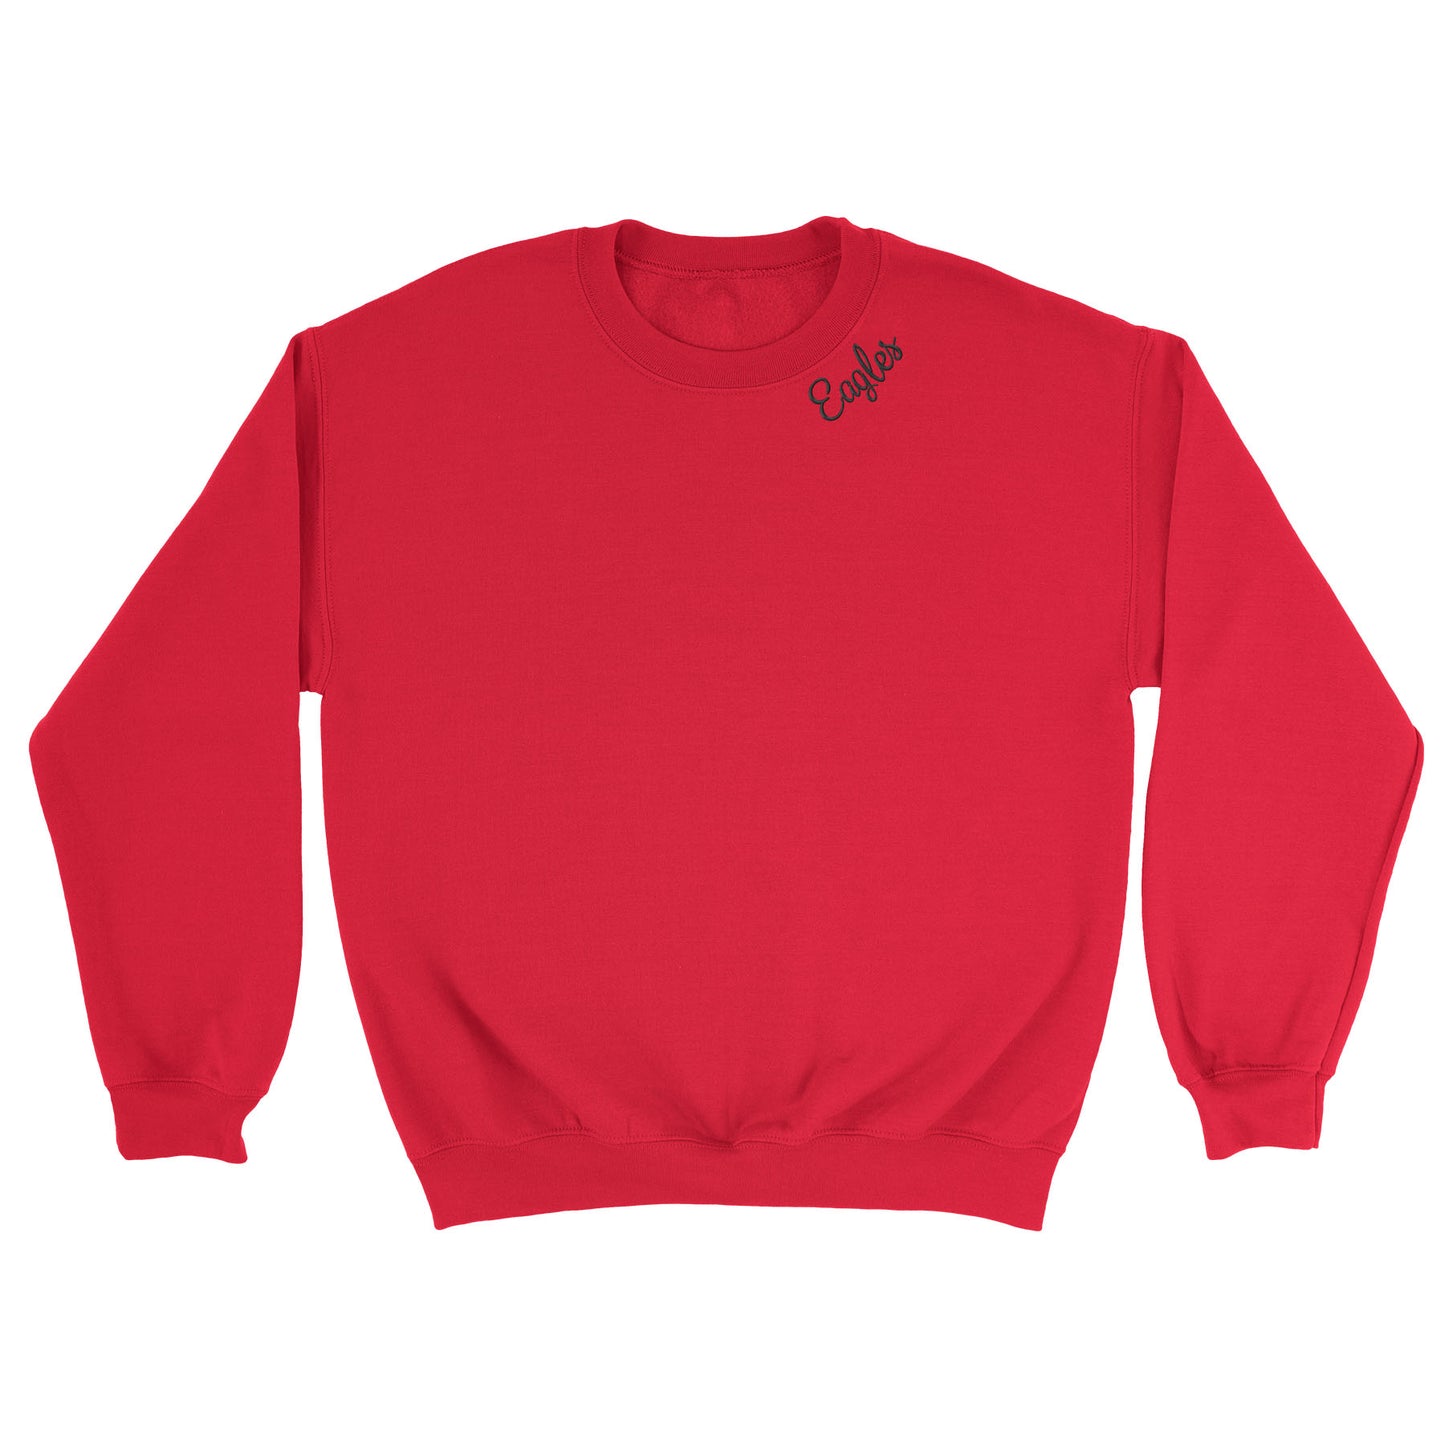 Eagles Neckline Embroidered Blend Crewneck Sweatshirt (2 Color Options)